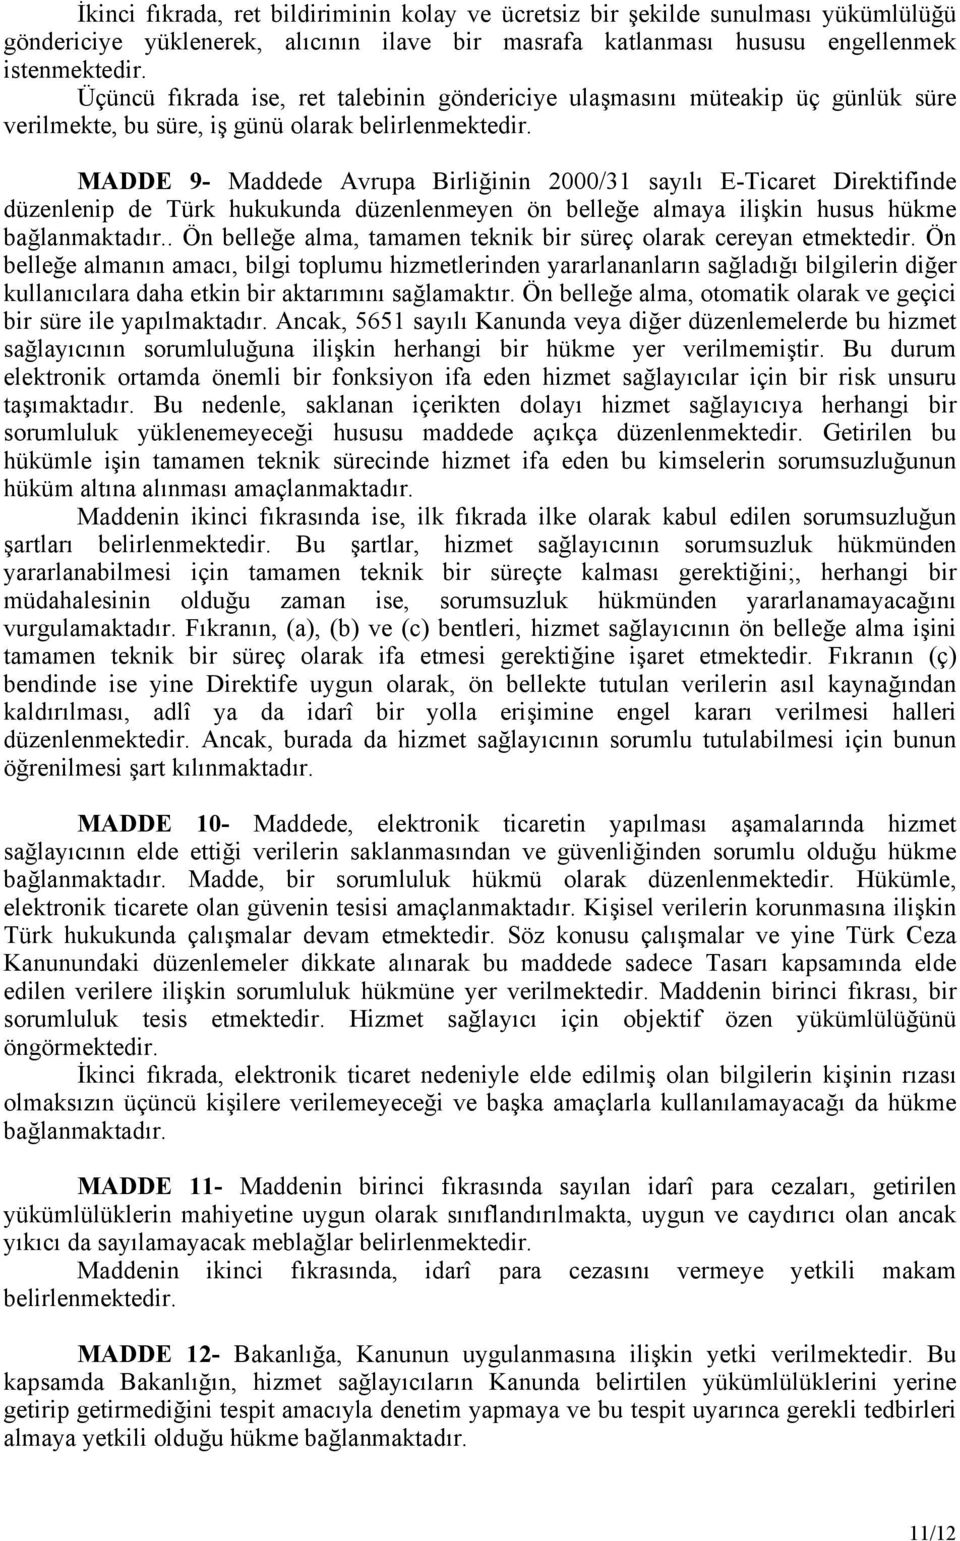 MADDE 9- Maddede Avrupa Birliğinin 2000/31 sayılı E-Ticaret Direktifinde düzenlenip de Türk hukukunda düzenlenmeyen ön belleğe almaya ilişkin husus hükme bağlanmaktadır.